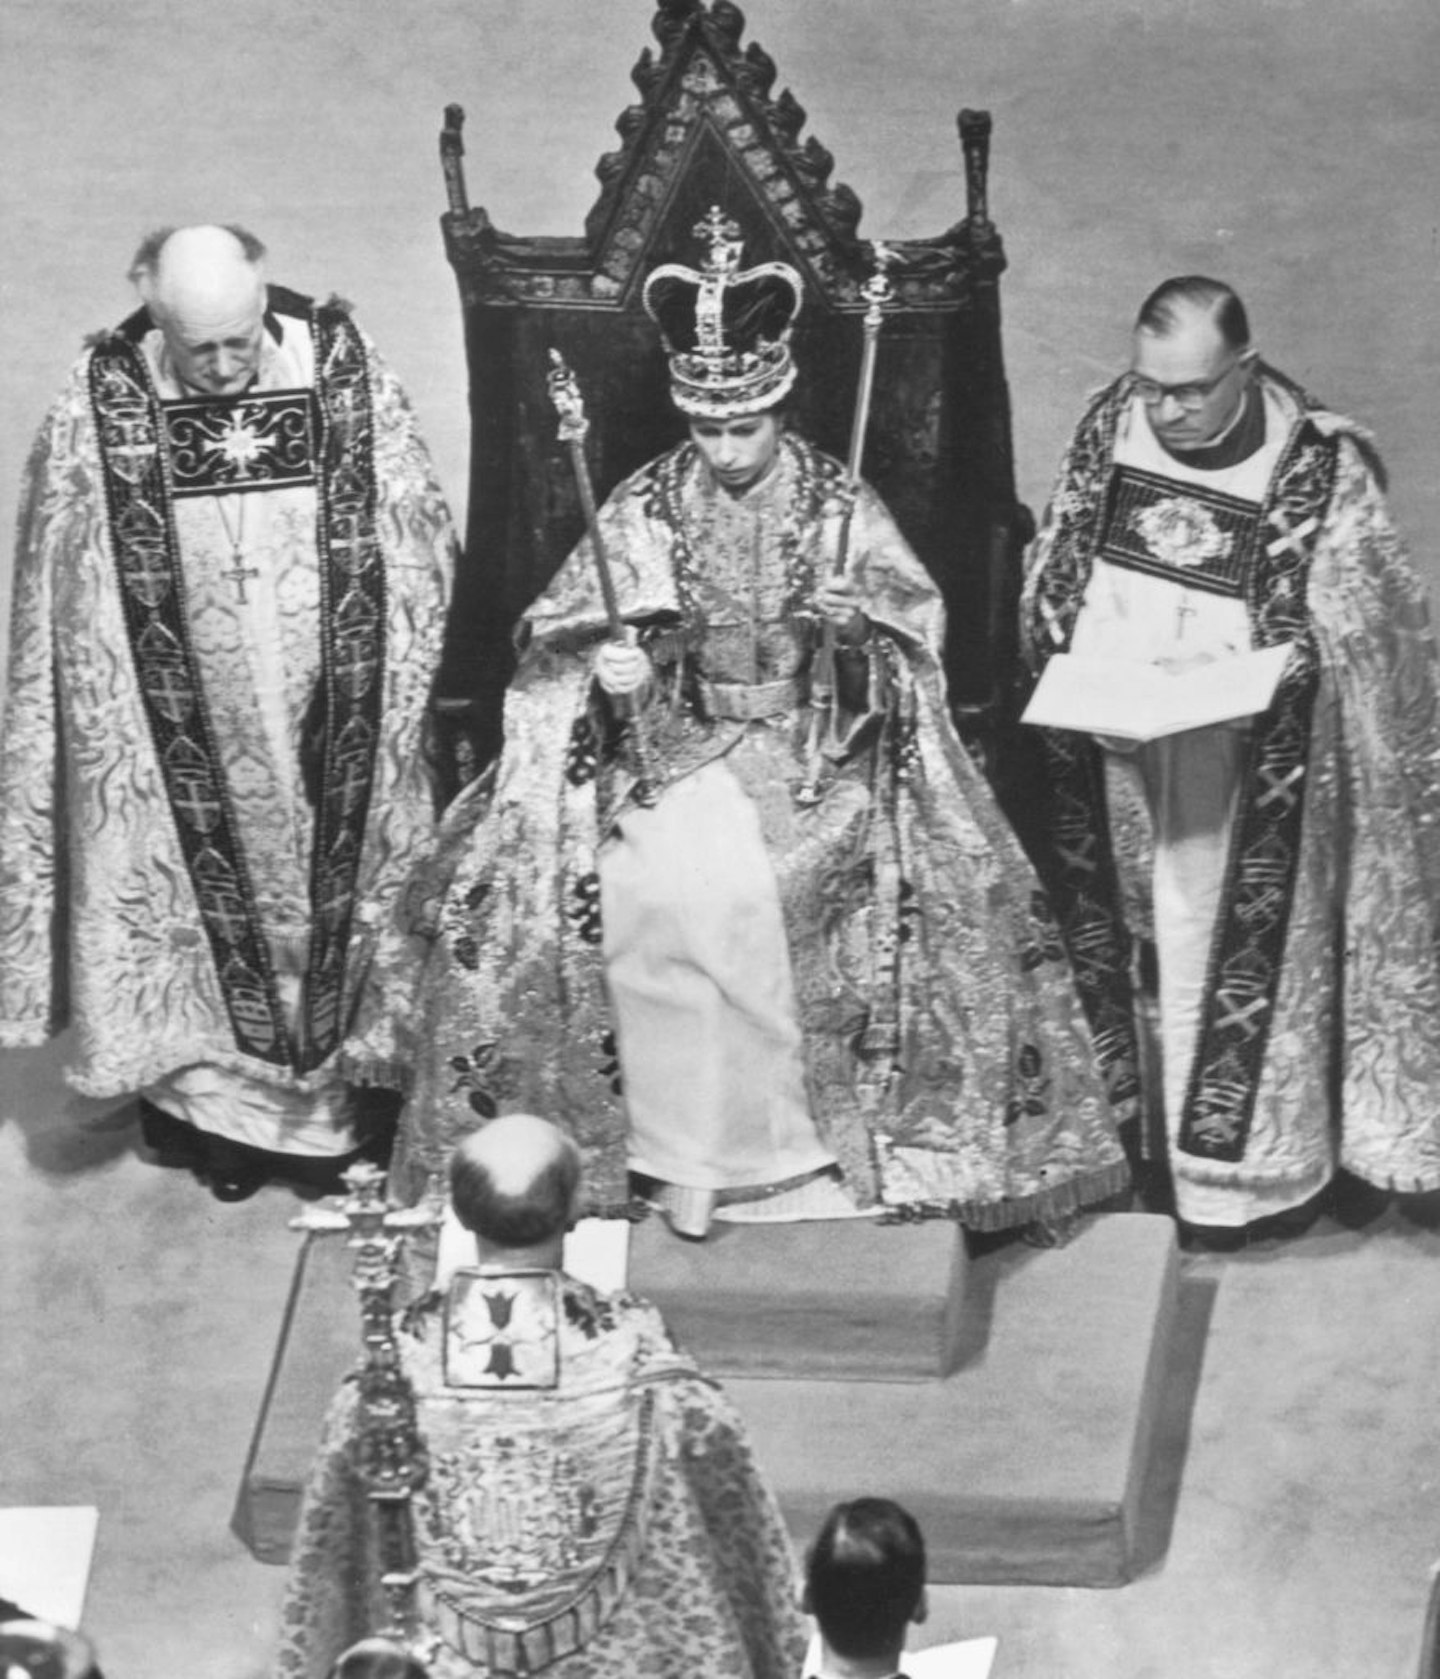 Queen Elizabeth II coronation robes